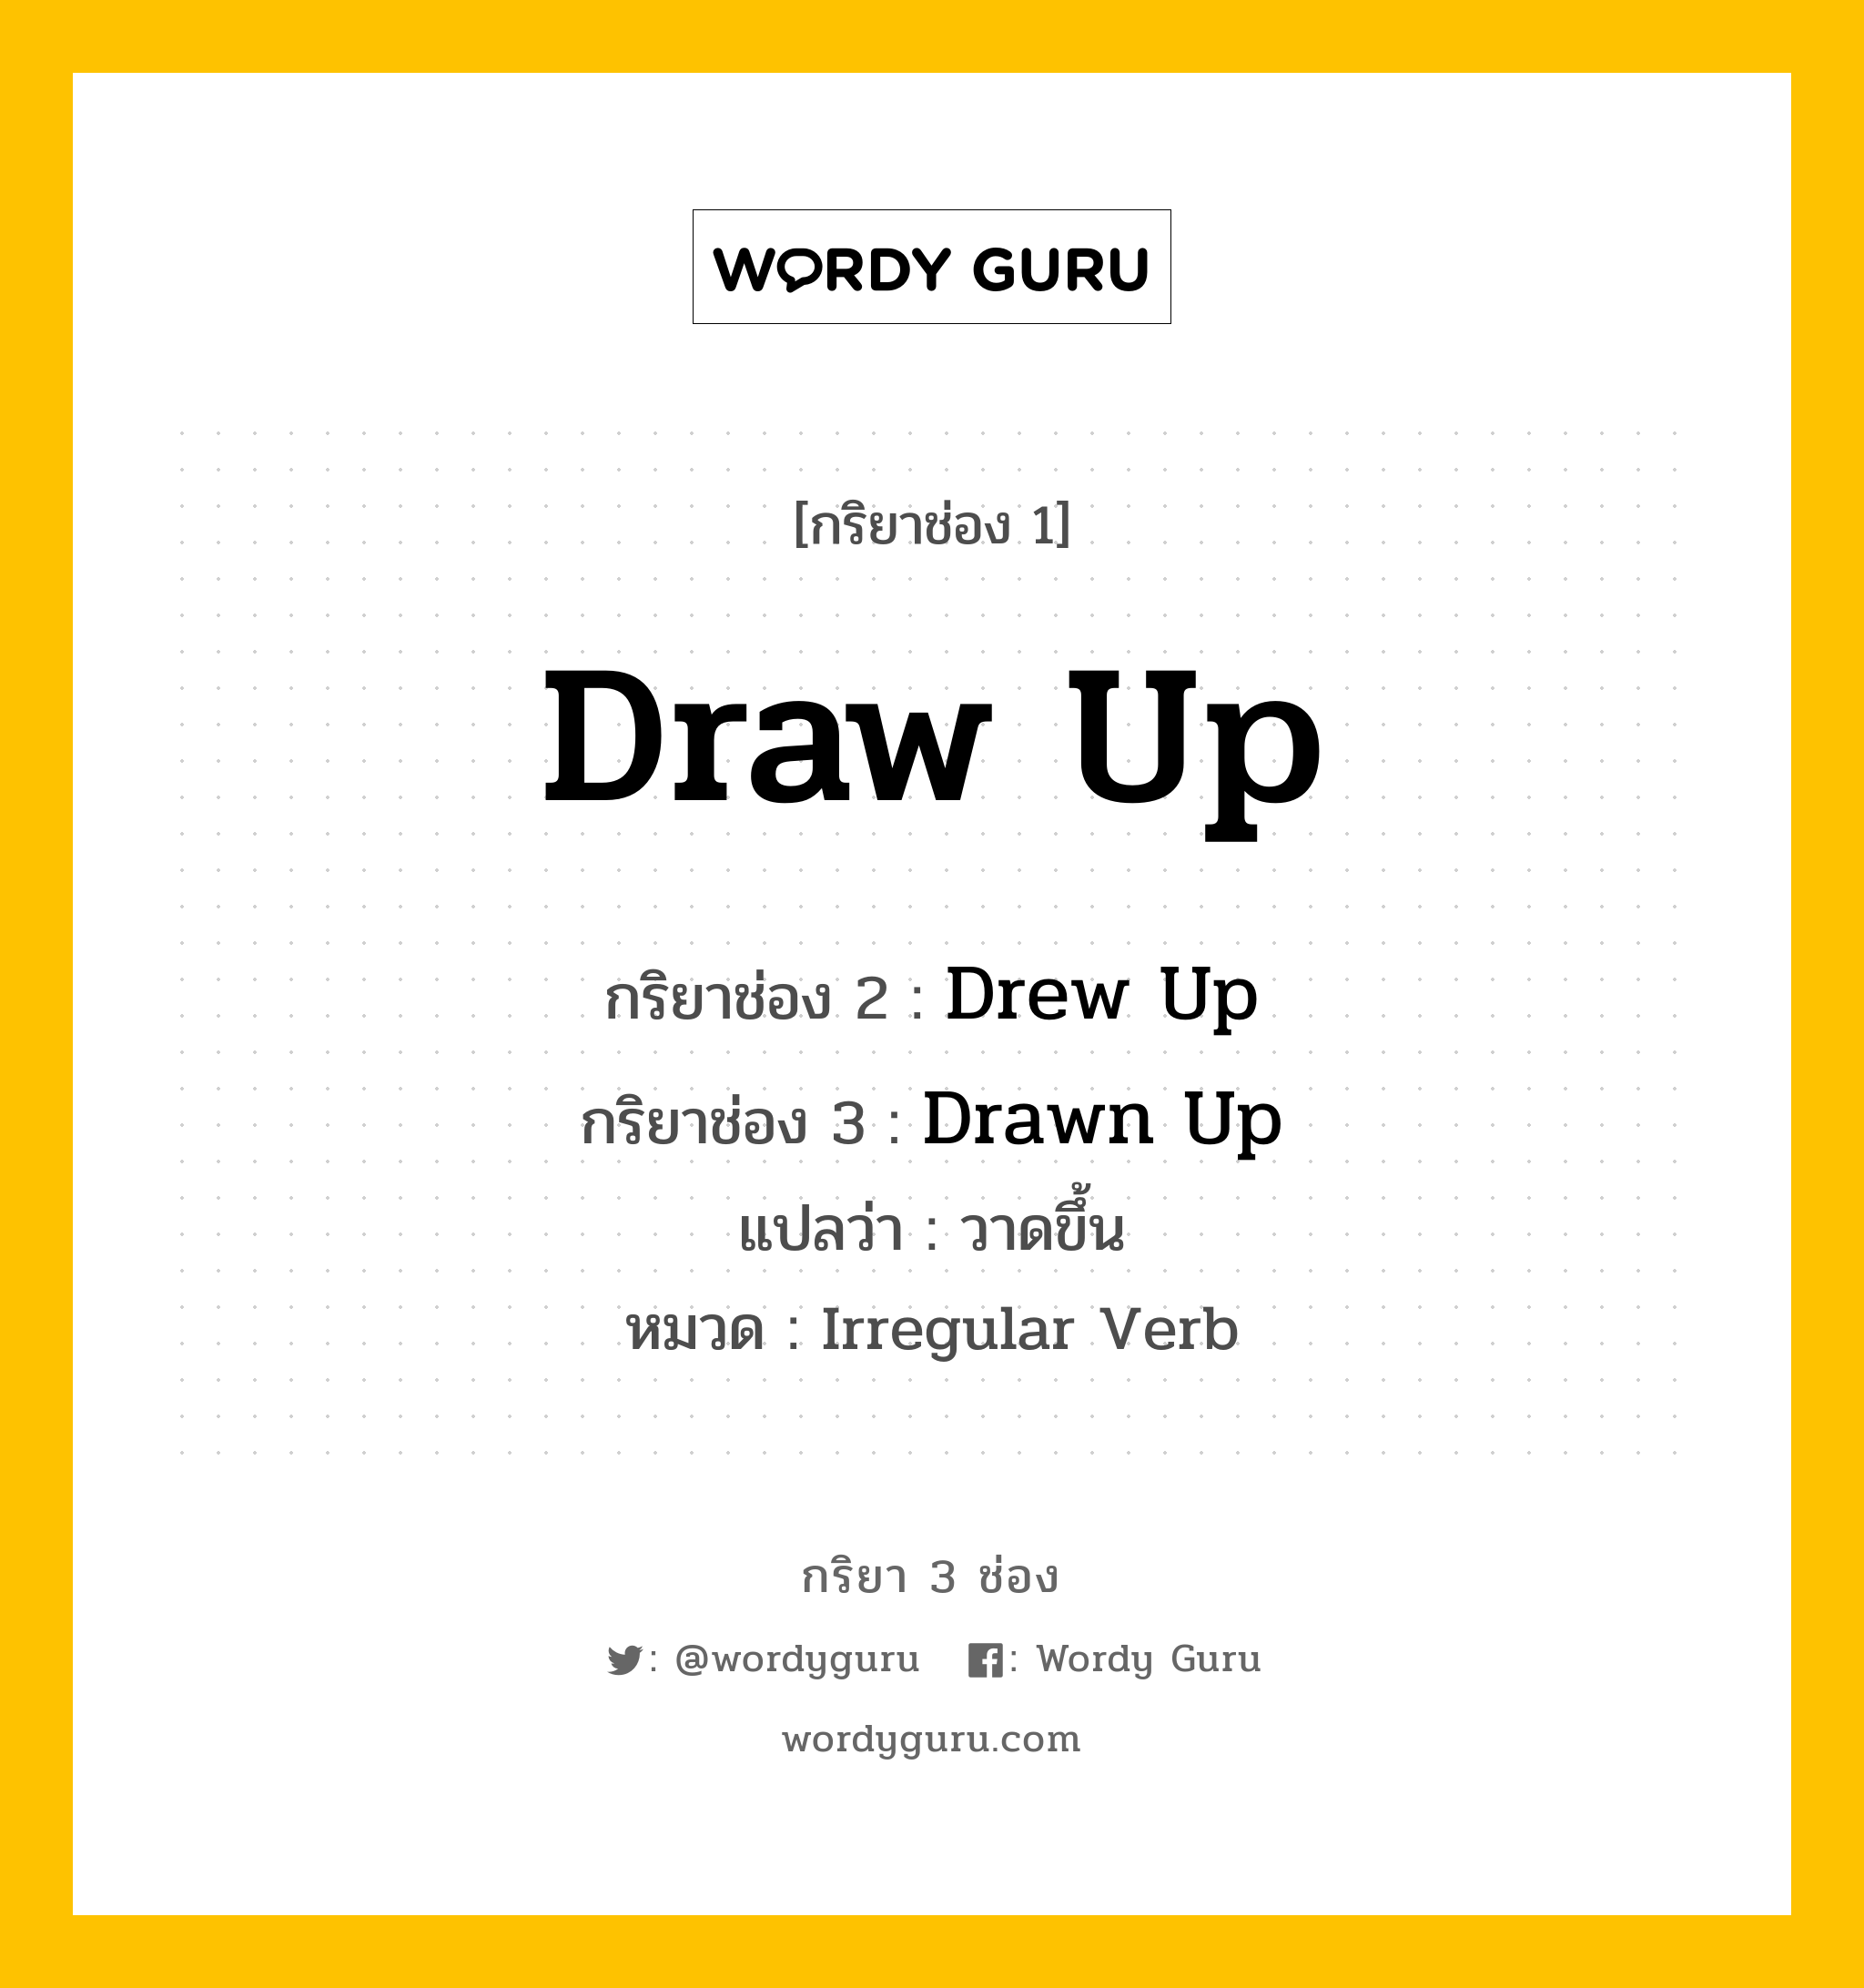 กริยา 3 ช่อง: Draw Up ช่อง 2 Draw Up ช่อง 3 คืออะไร, กริยาช่อง 1 Draw Up กริยาช่อง 2 Drew Up กริยาช่อง 3 Drawn Up แปลว่า วาดขึ้น หมวด Irregular Verb หมวด Irregular Verb